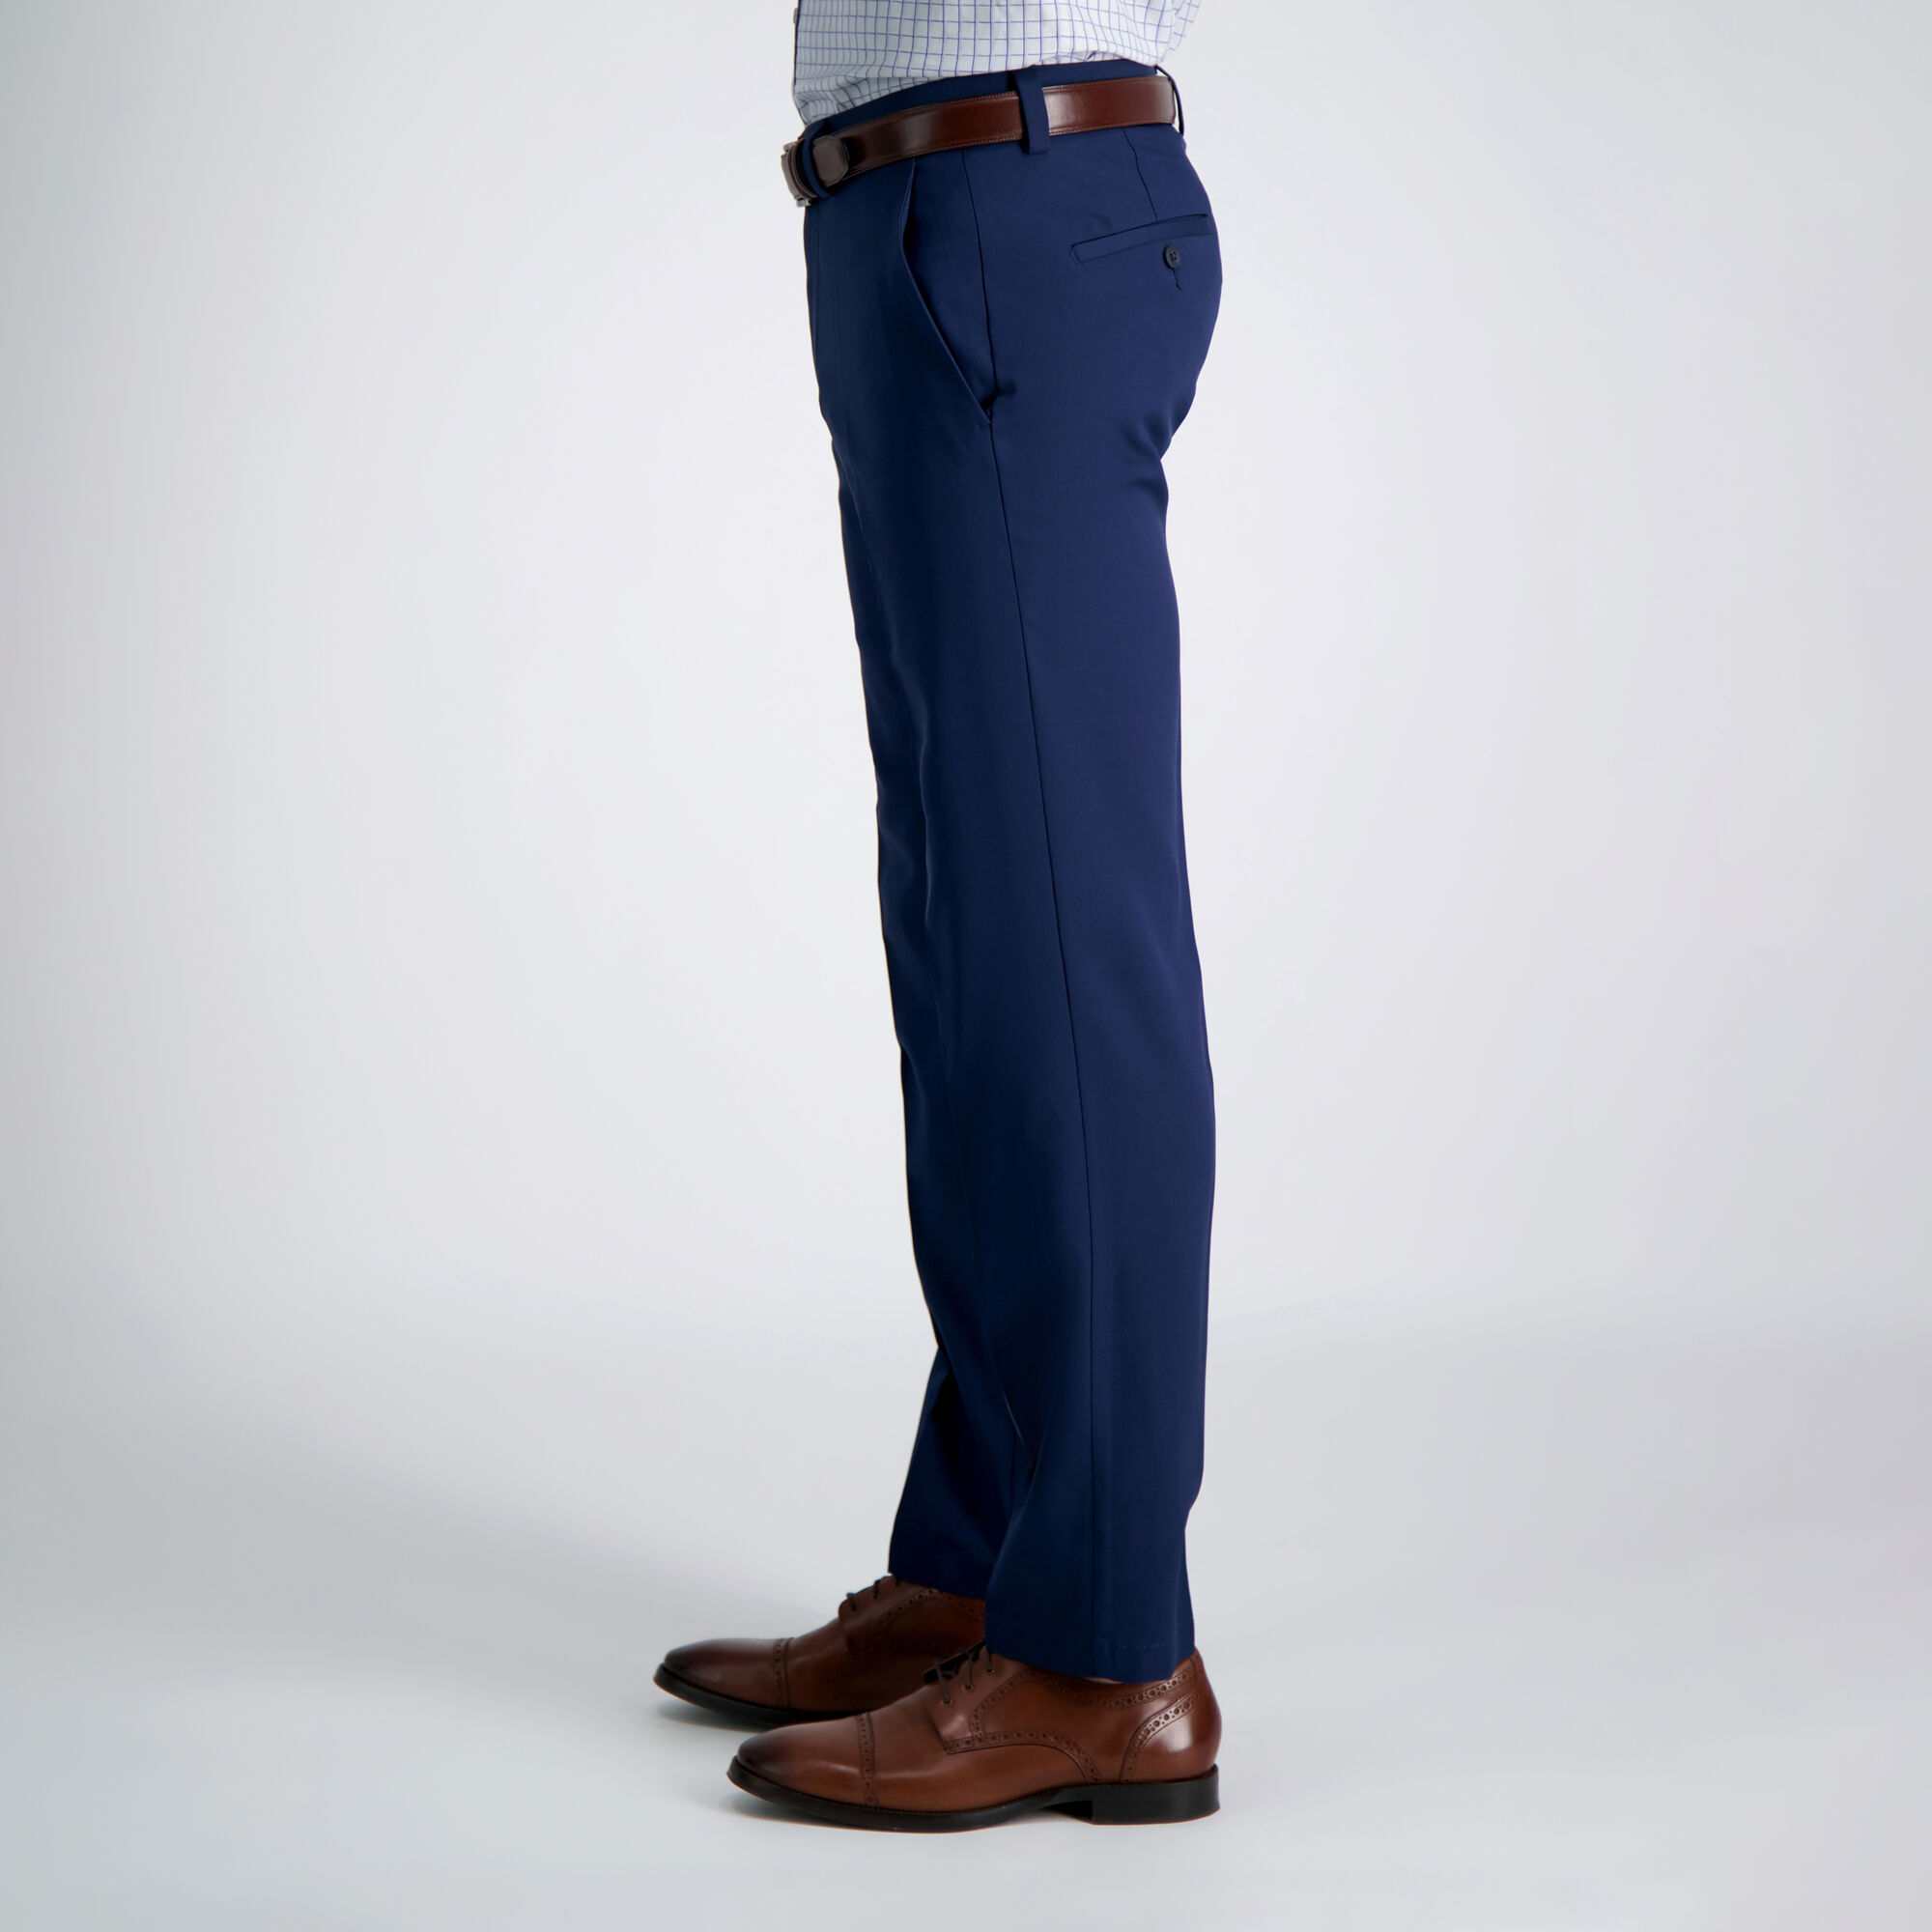 Men's Pants: Dress Pants, Chinos, Khakis & More | Haggar